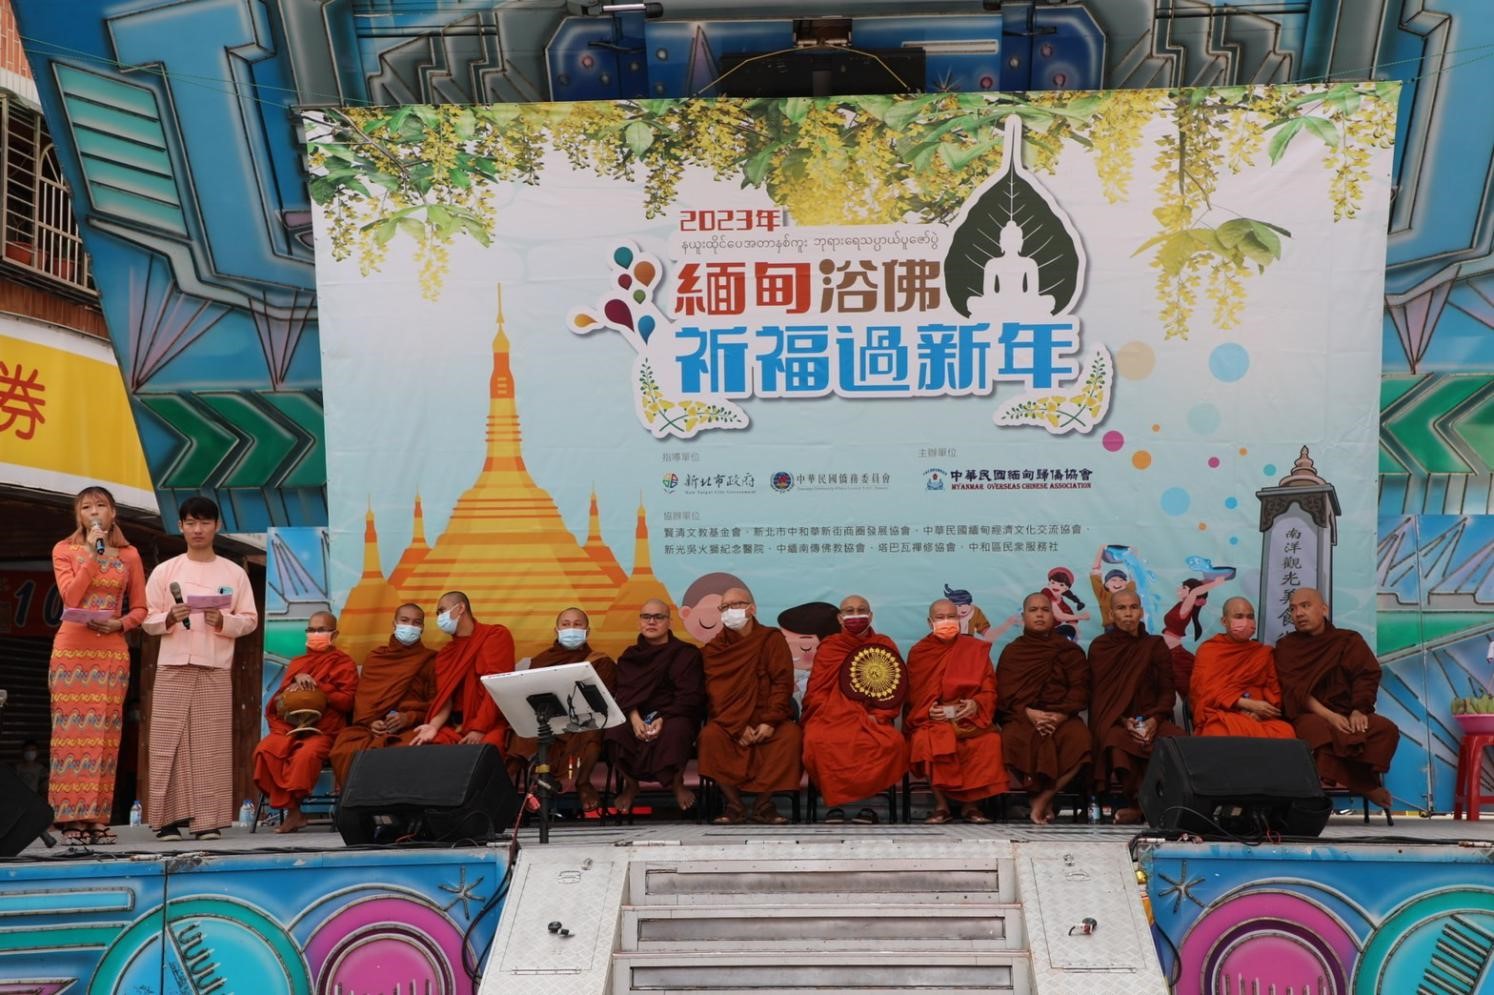 中和華新街「緬甸新年浴佛活動」  4月21日浴佛祈福過新年